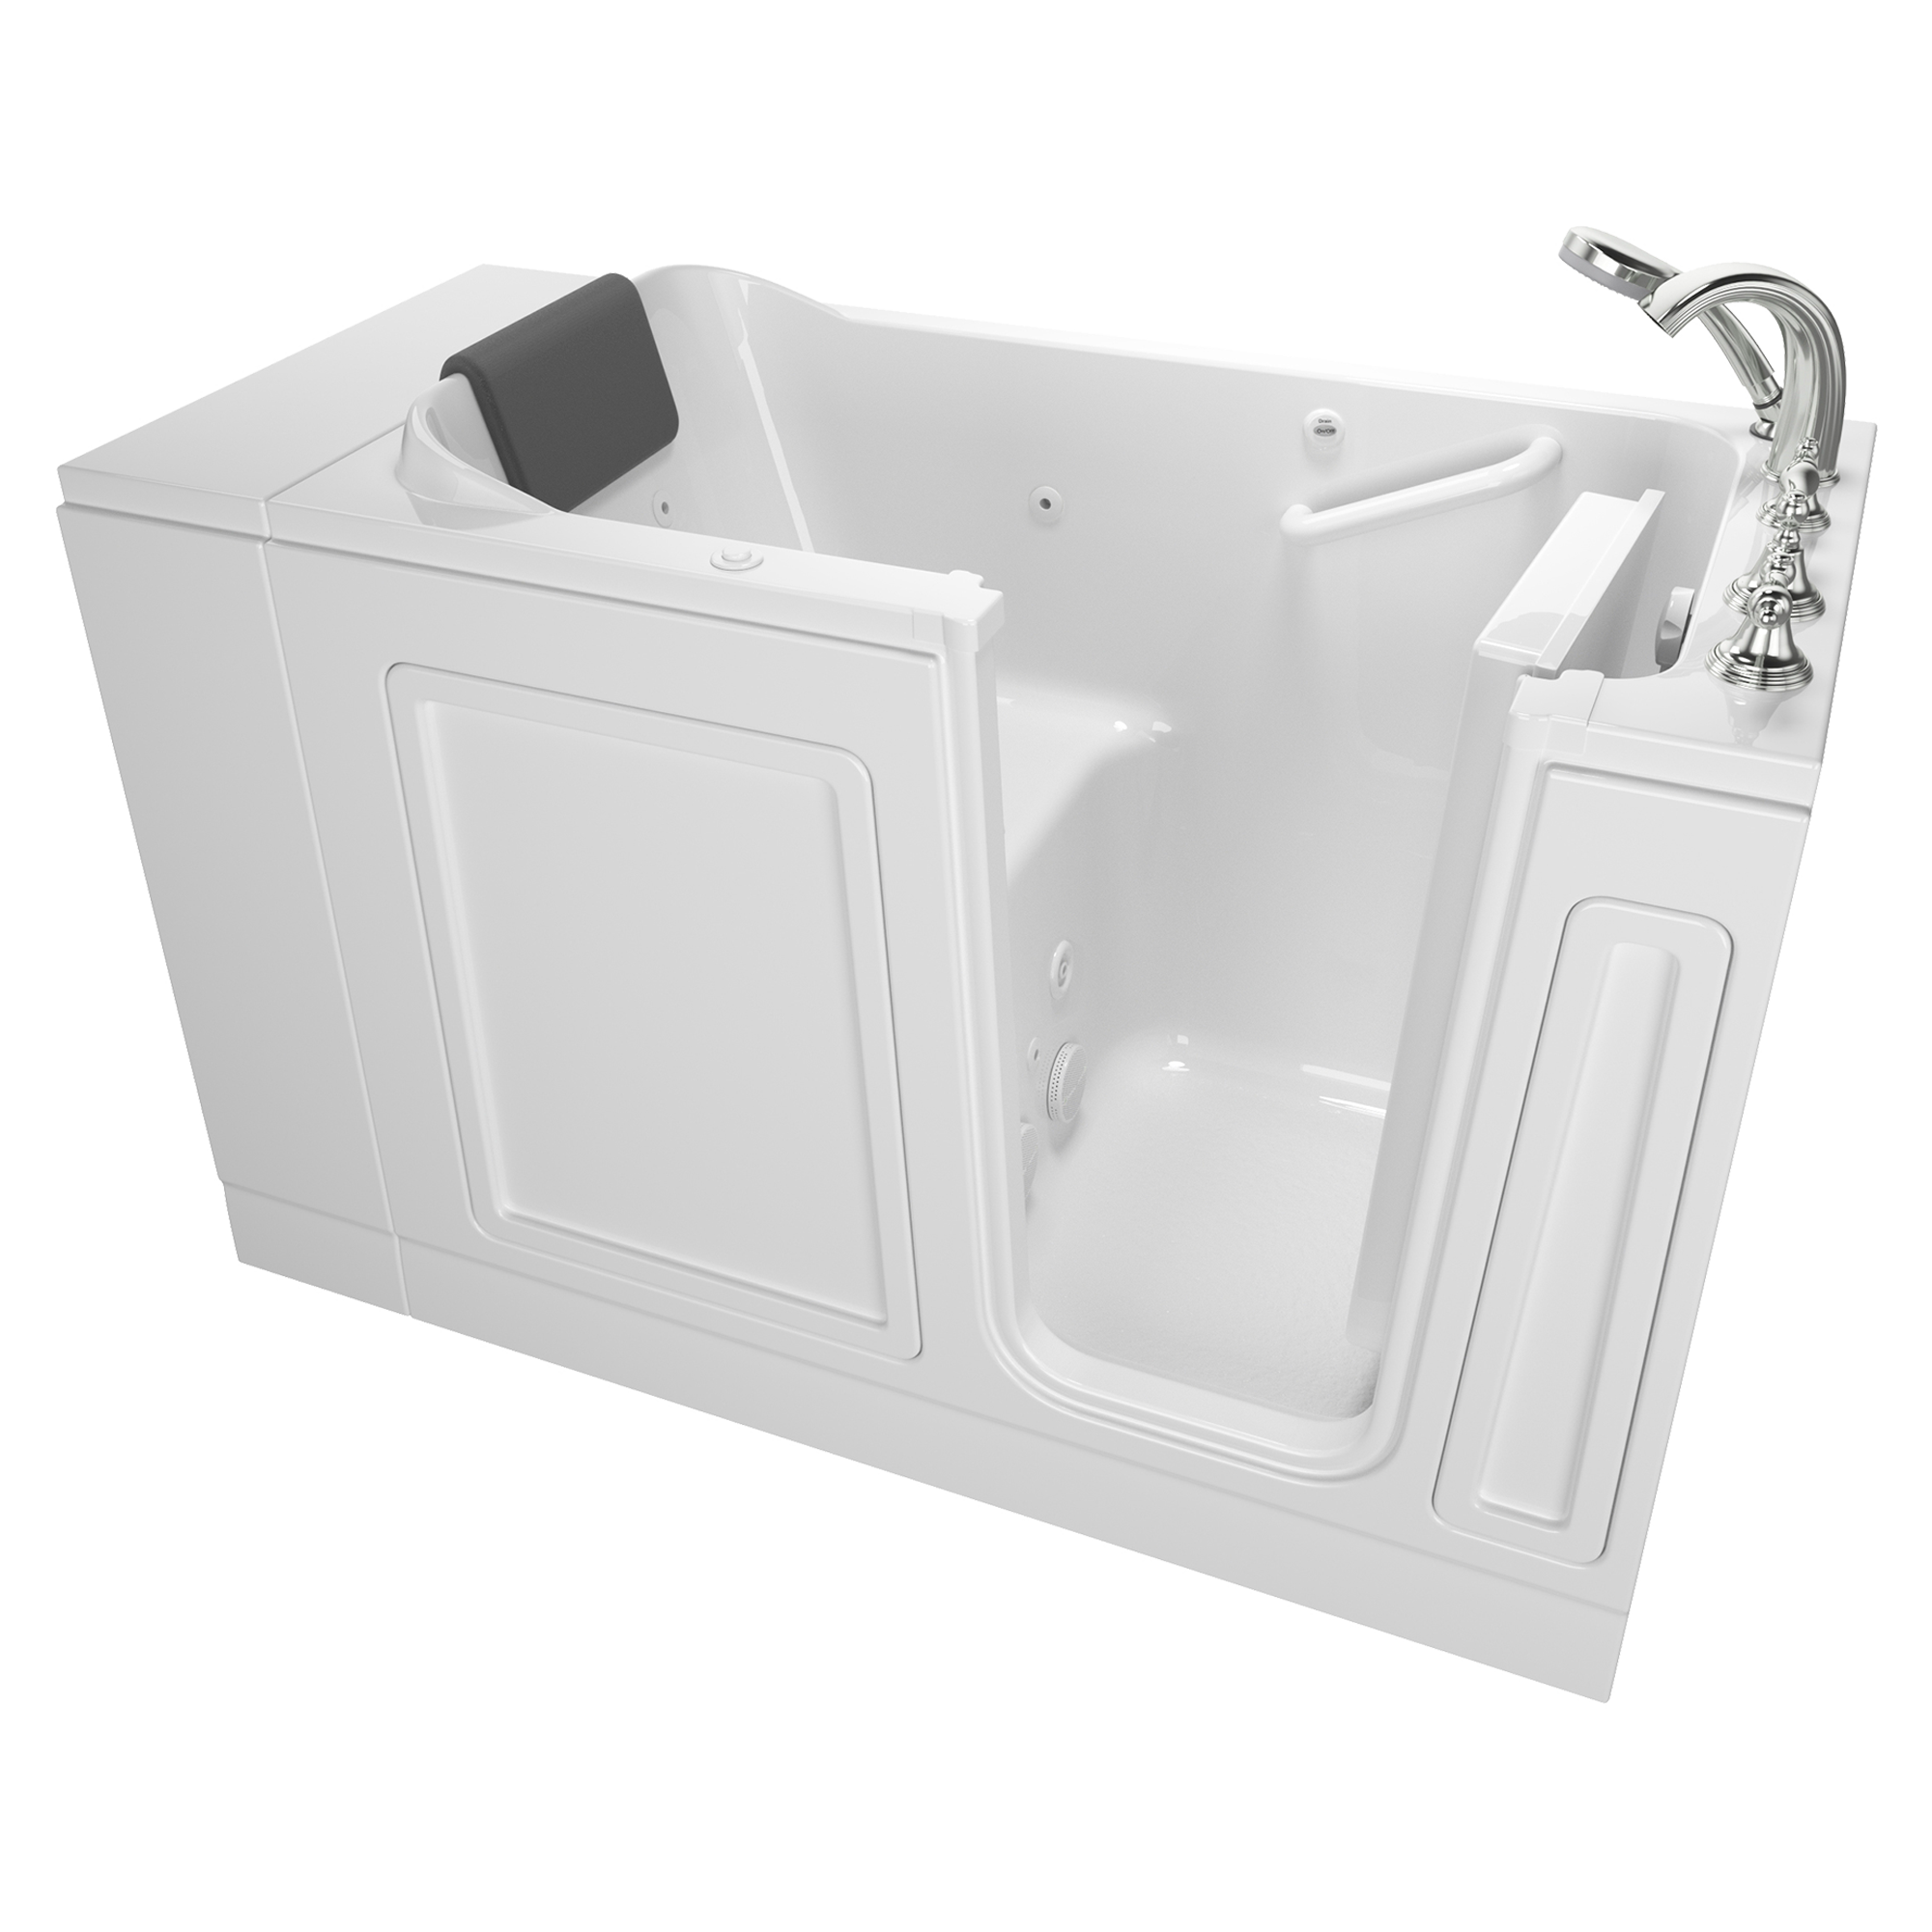 Baignoire à porte en acrylique de la série Luxury, 28 x 48 pouces, avec système à remous - Vidange à droite avec robinet